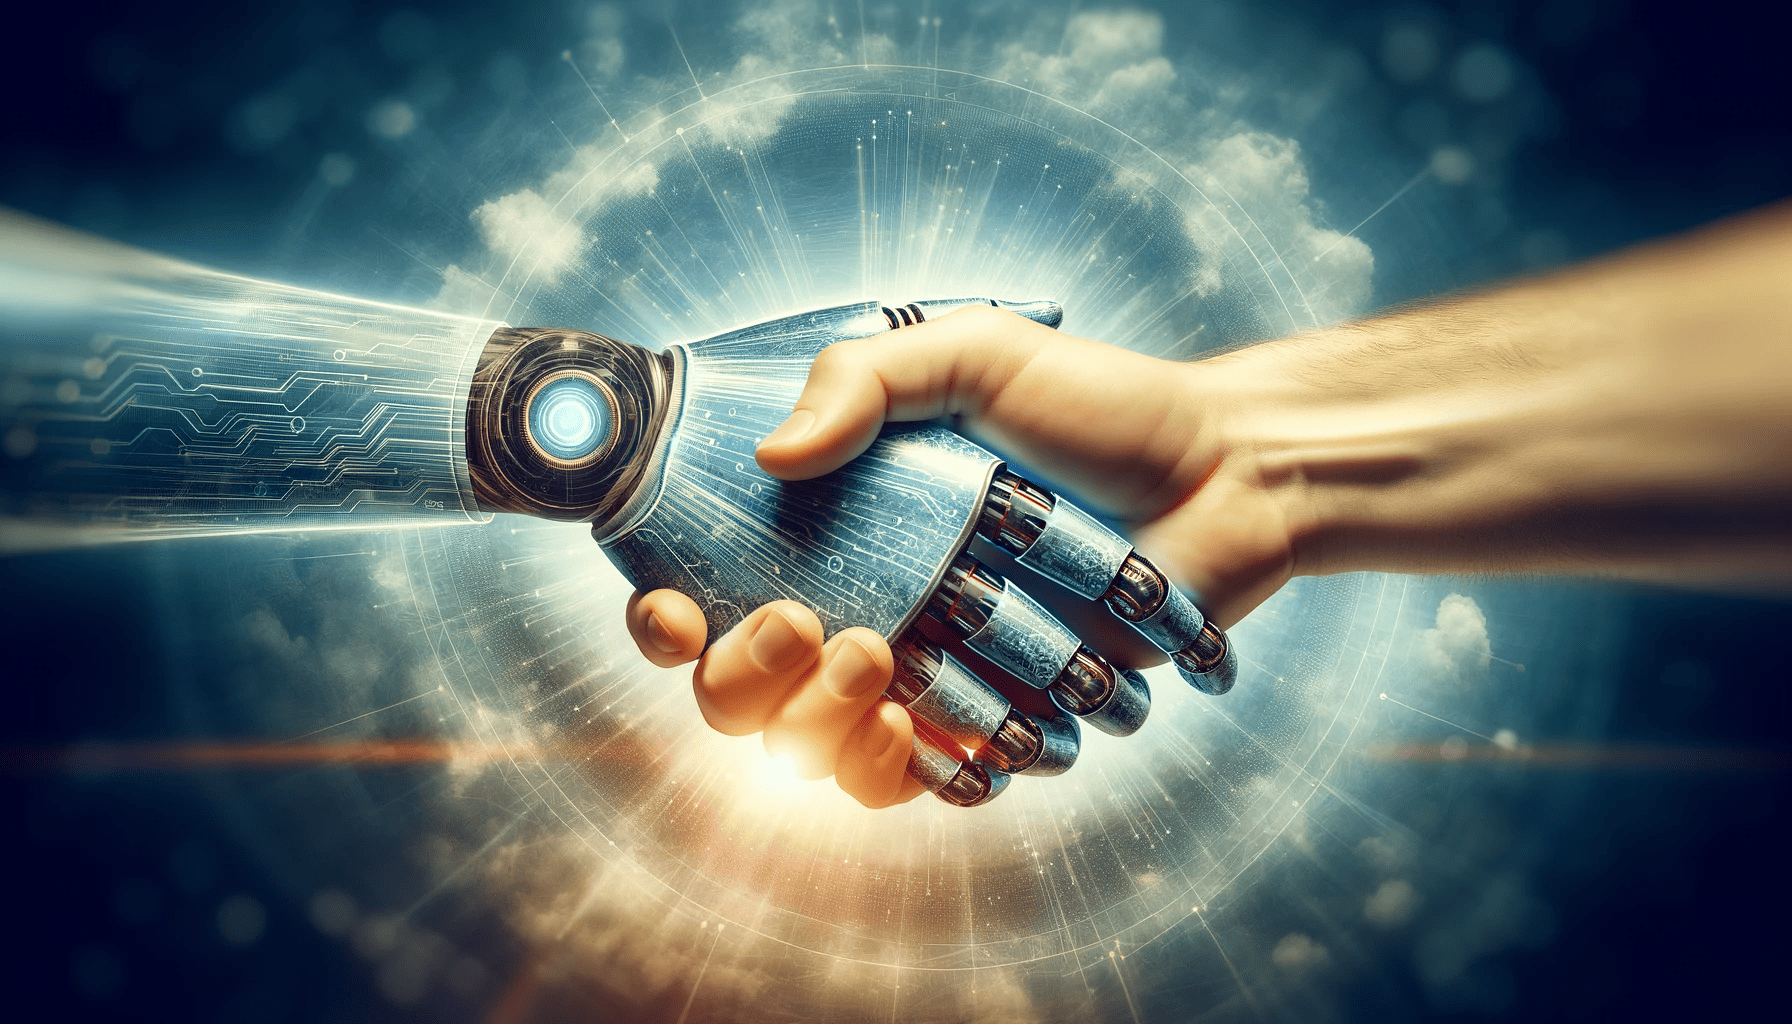 ein symbolischer Händedruck zwischen einer menschlichen Hand und einer digitalen Roboterhand, der die Zusammenarbeit zwischen Menschen und künstlicher Intelligenz darstellt